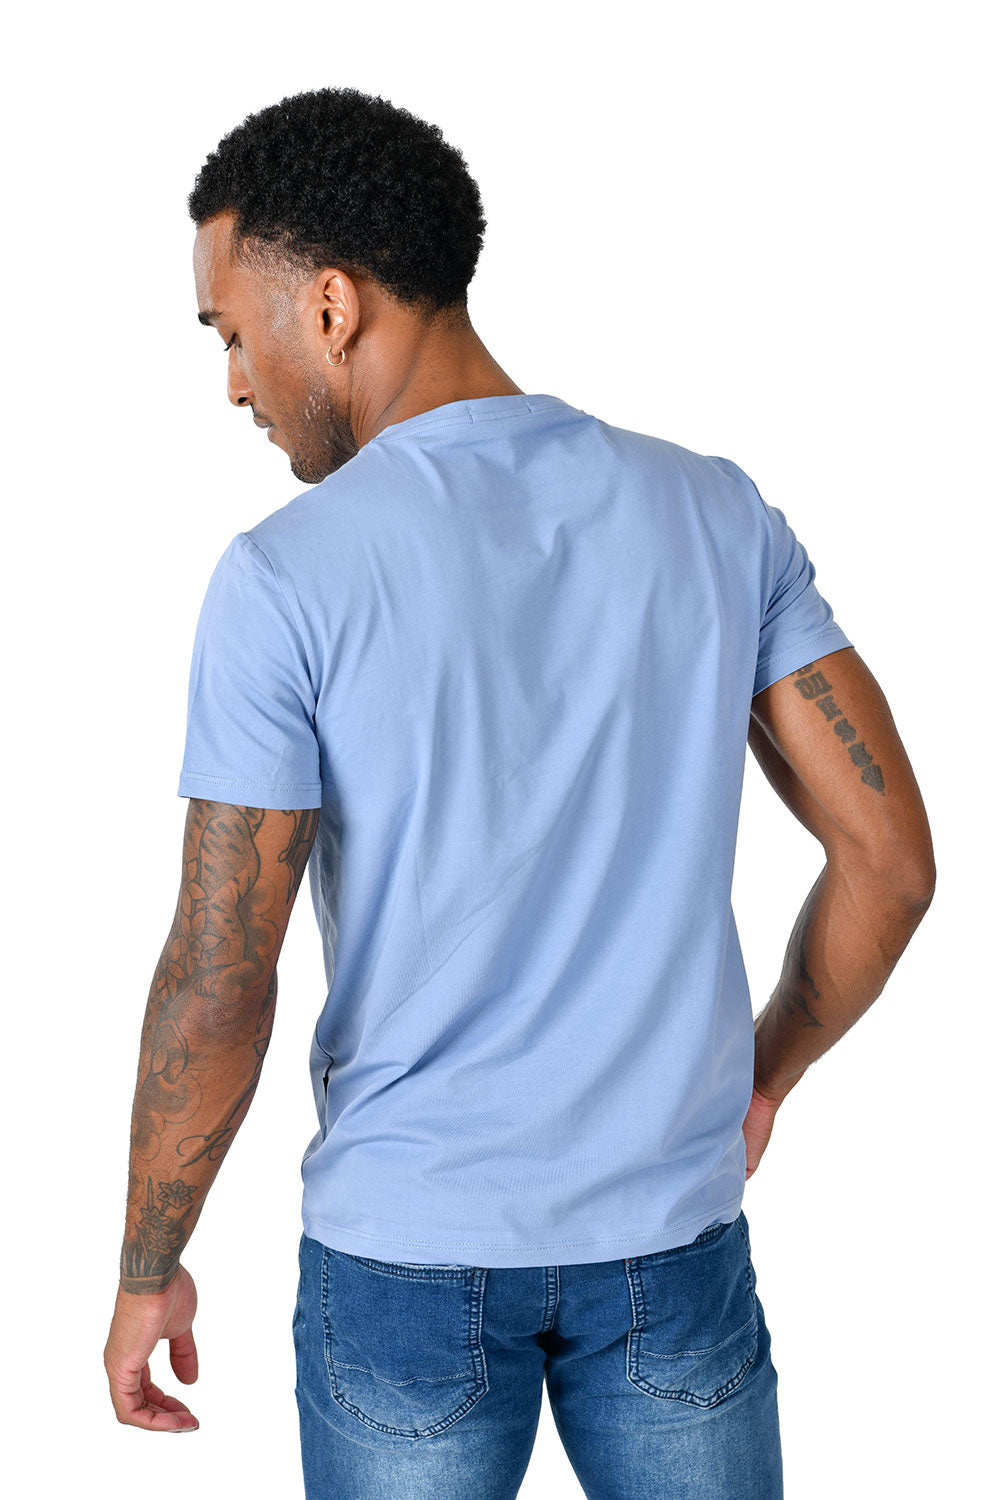 BARABAS Men's Solid Color V-neck T-shirts VTV216 Blue 